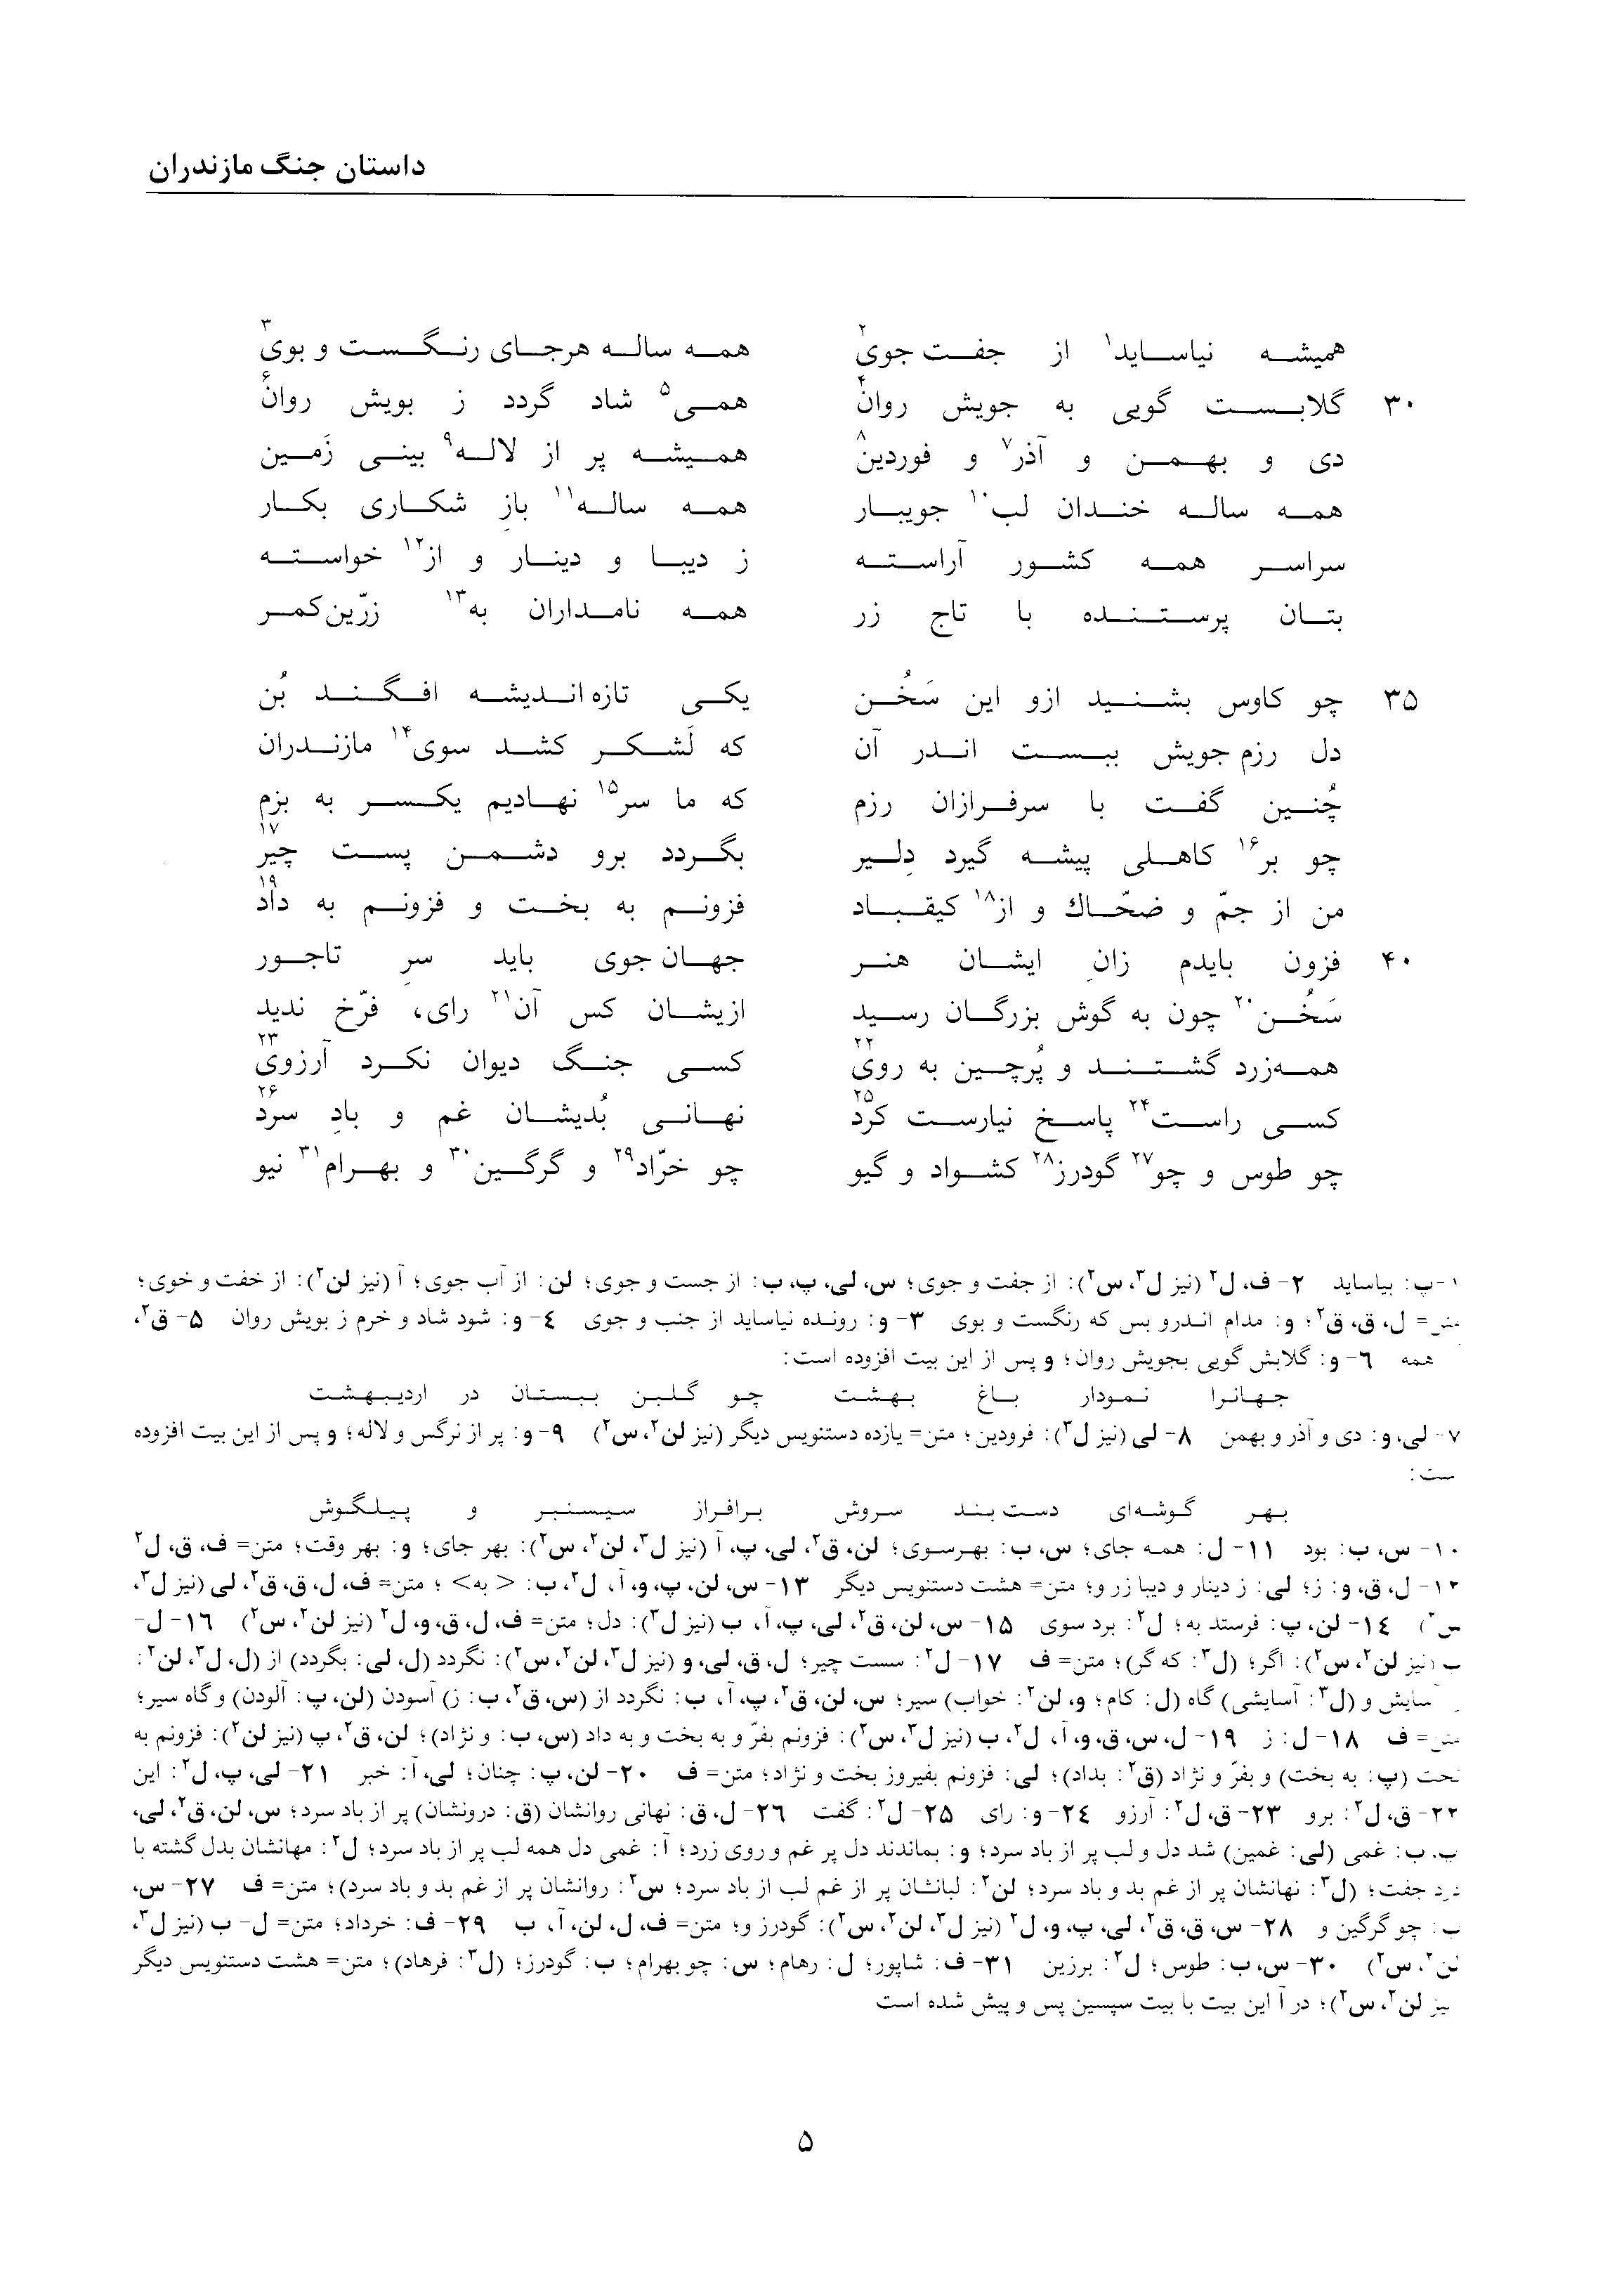 vol. 2, p. 5